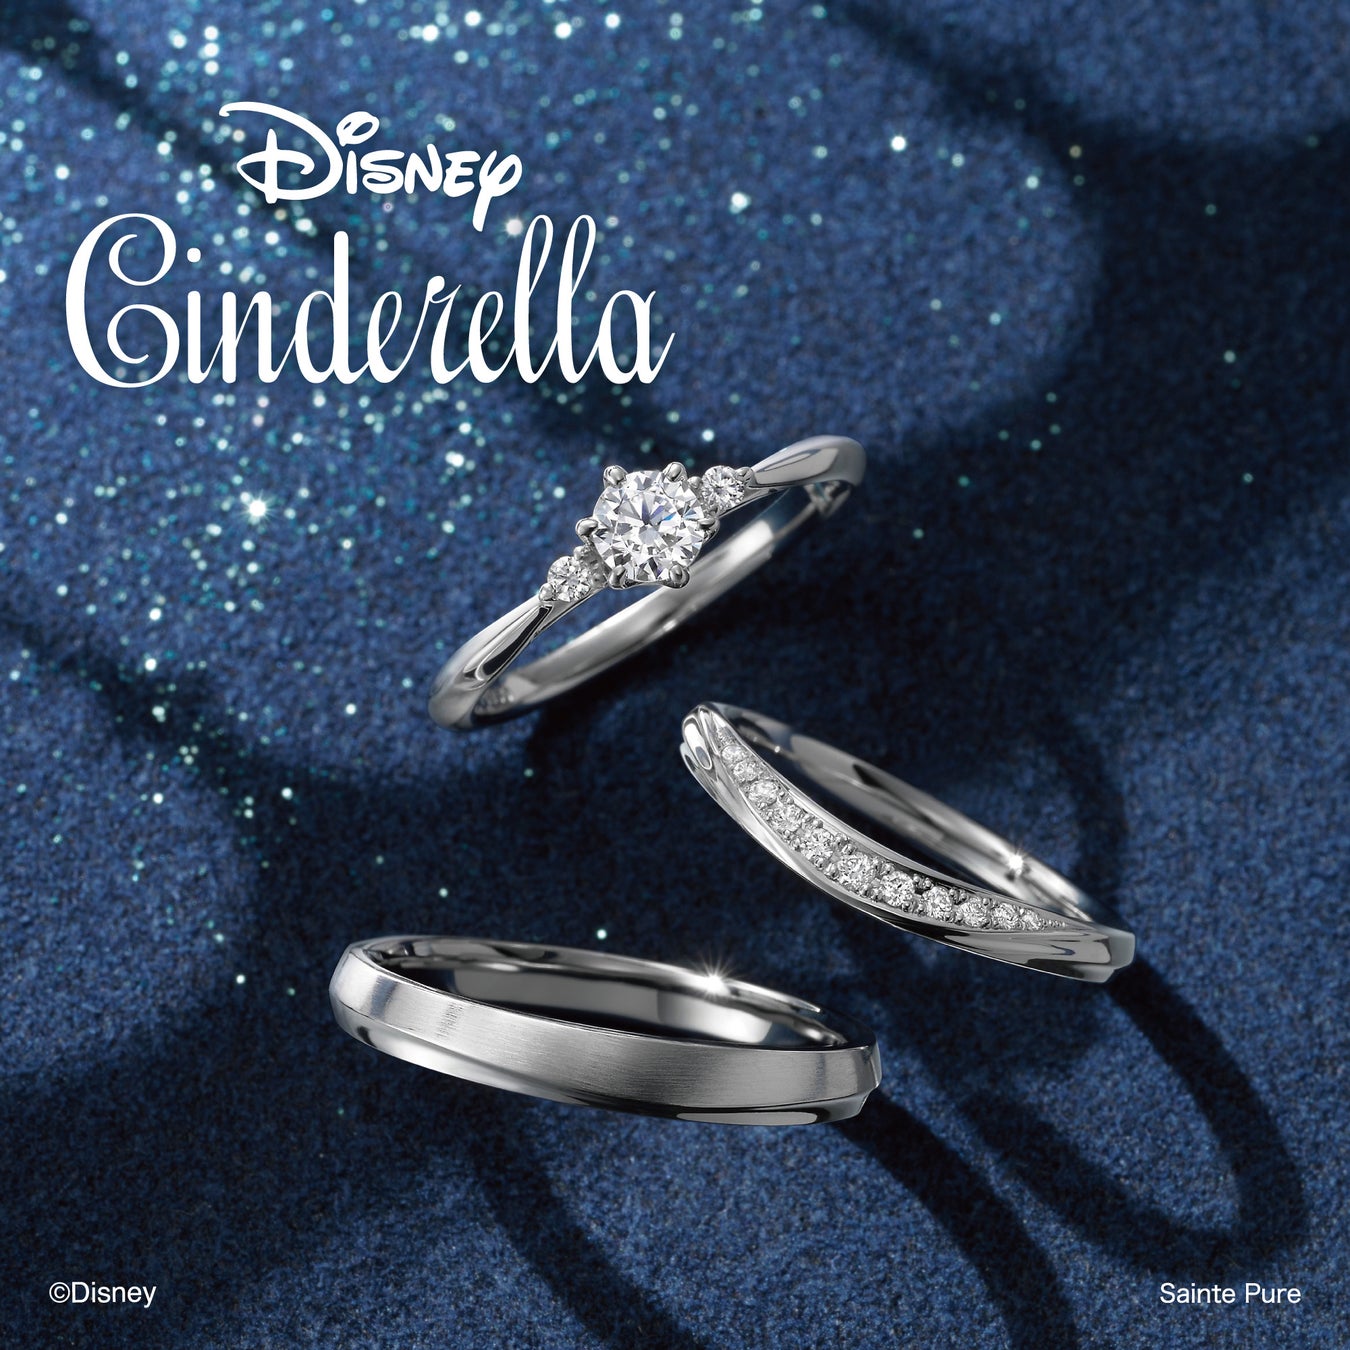 新潟県の婚約指輪・結婚指輪専門店 一真堂にてディズニーアニメーション映画『シンデレラ』をモチーフにしたブライダルコレクションの正規取り扱いを開始。